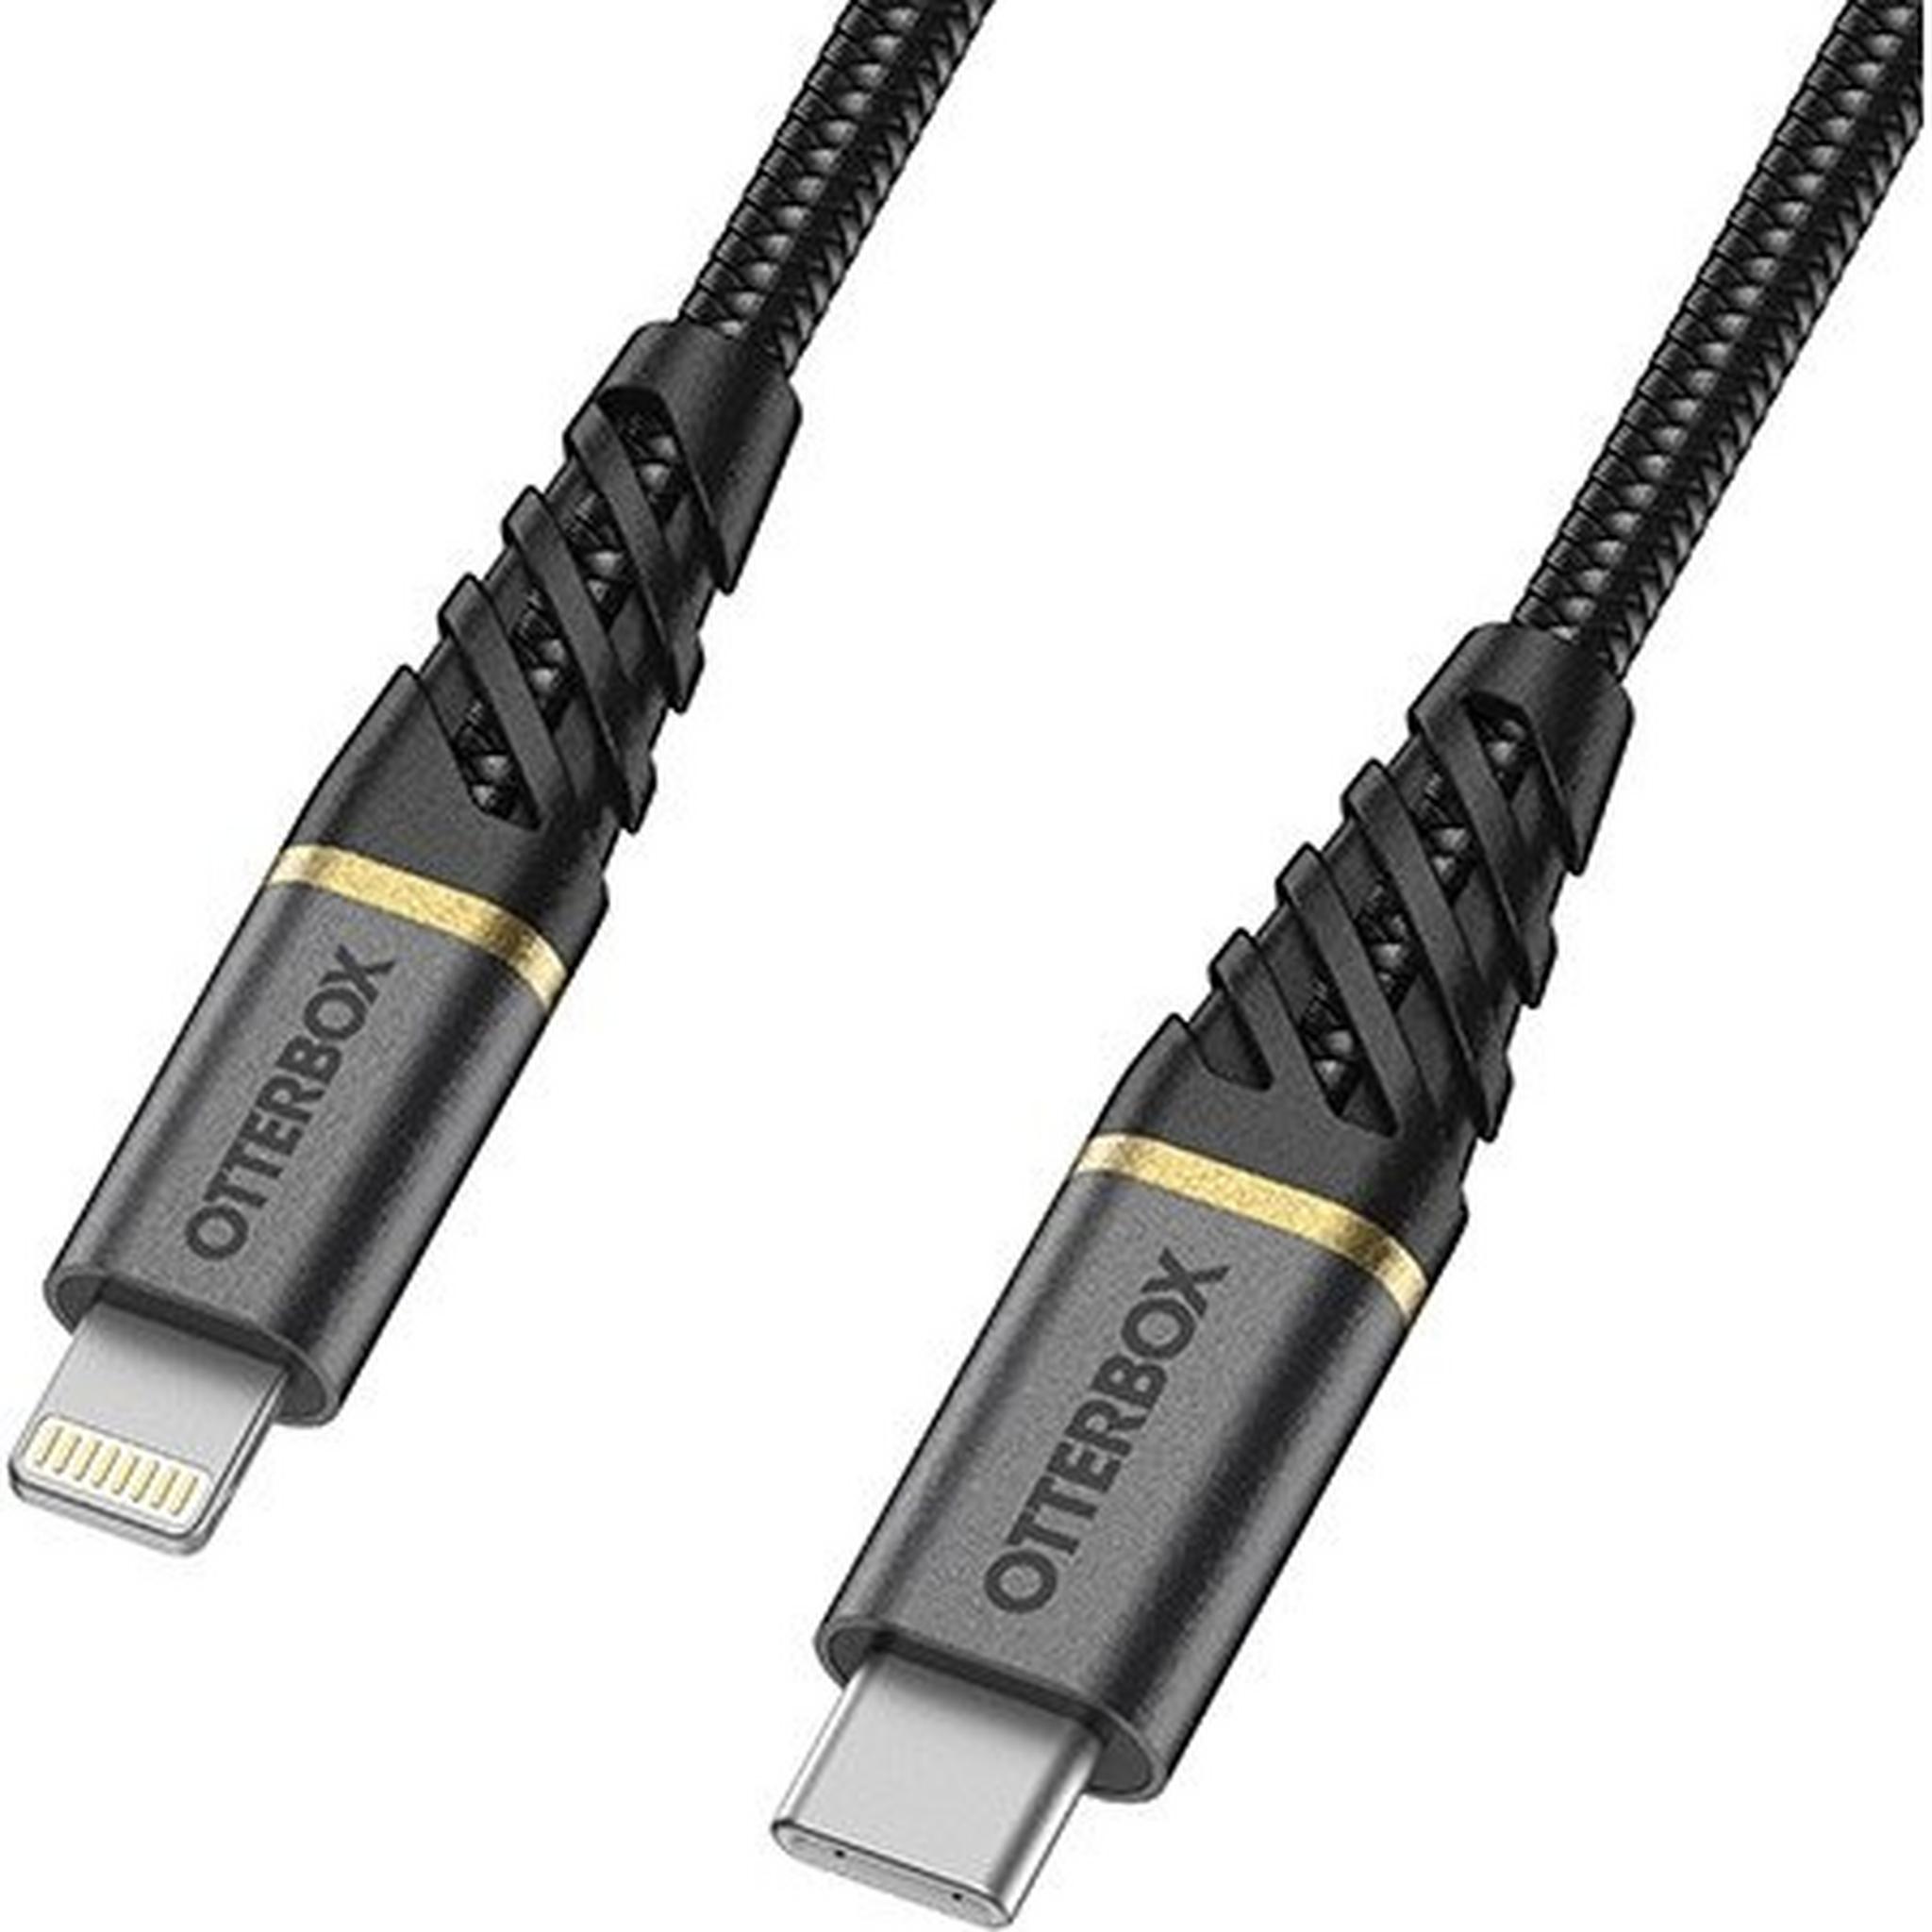 OtterBox Premium USB-C Lightning Cable 1-Meter (78-52654) - Black